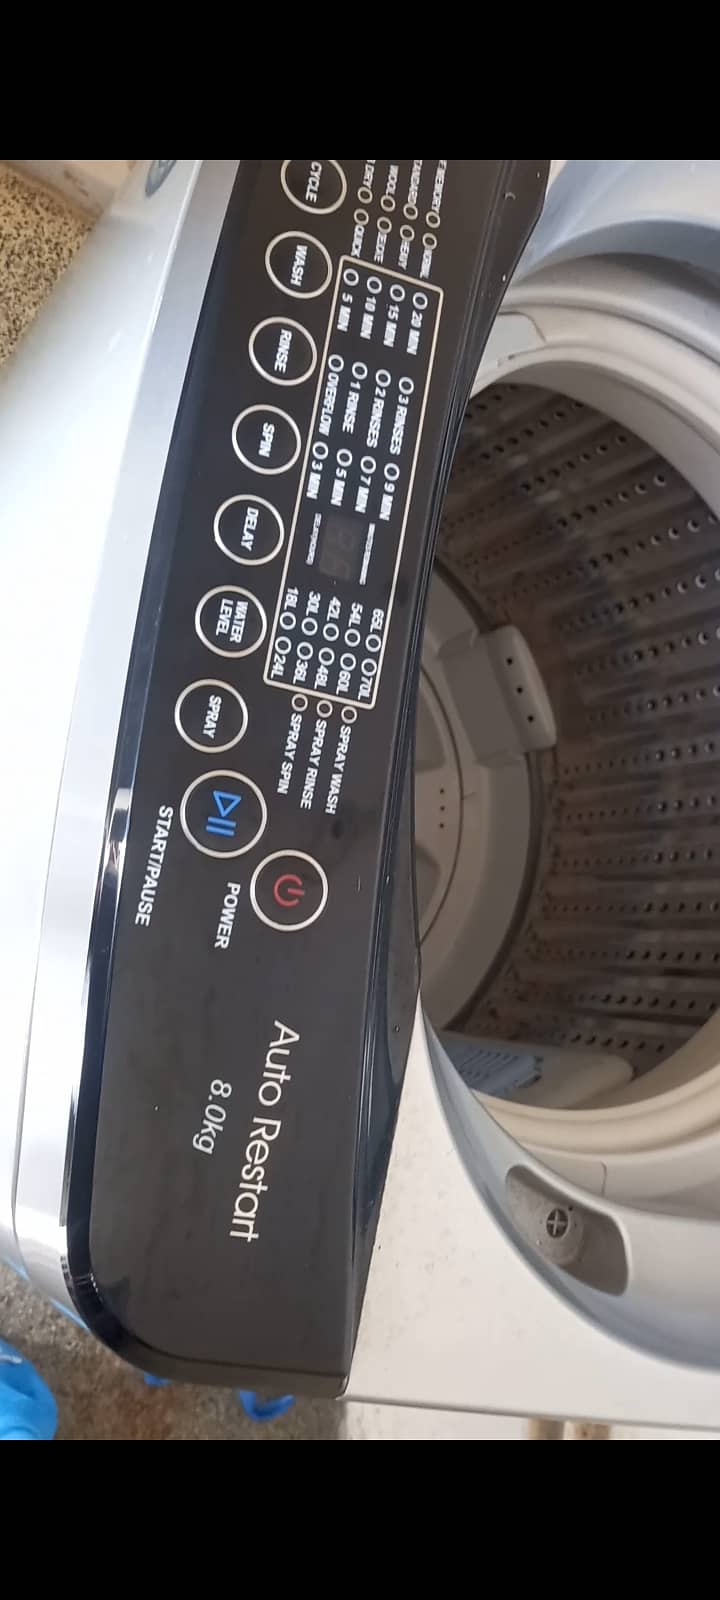 Full automatic washing machine 4